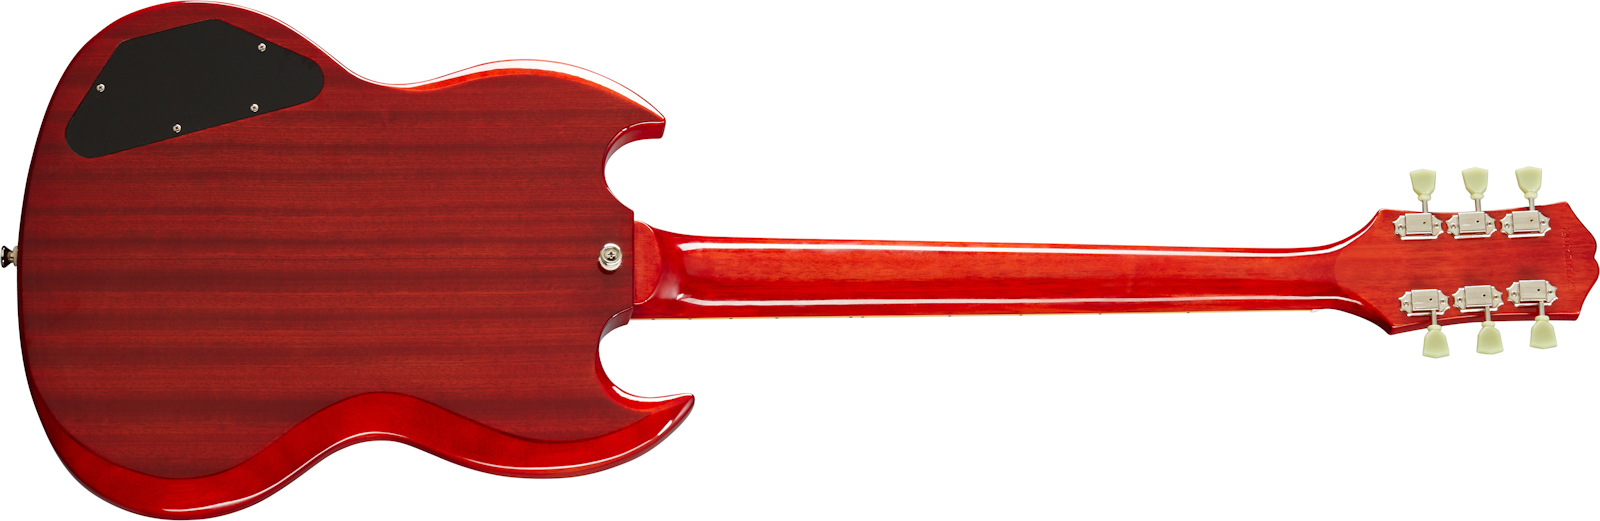 Epiphone Sg Standard 1961 2h Ht Lau - Vintage Cherry - Double Cut E-Gitarre - Variation 1